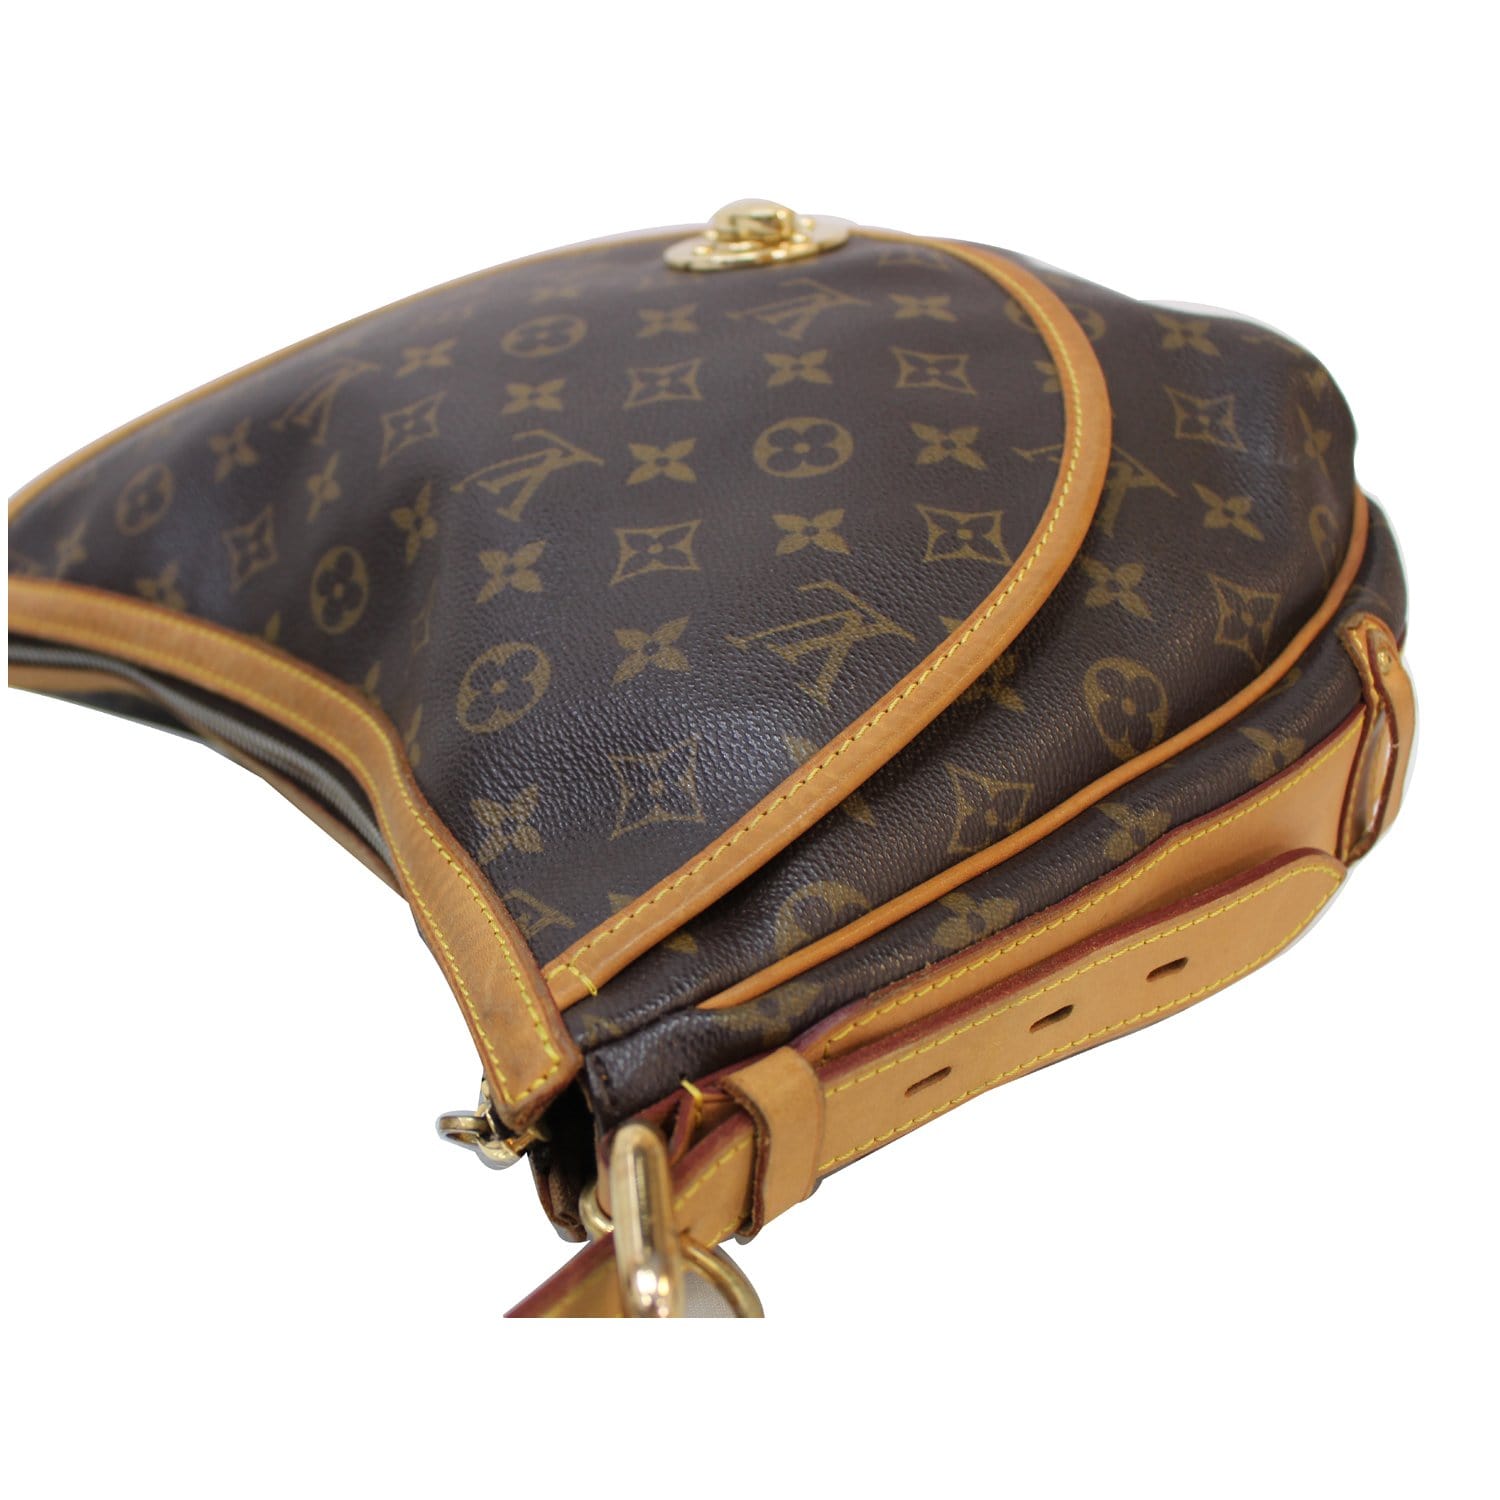 Louis Vuitton, Bags, Authentic Preloved Lv Tulum Gm Monogram Canvas  Shoulder Bag